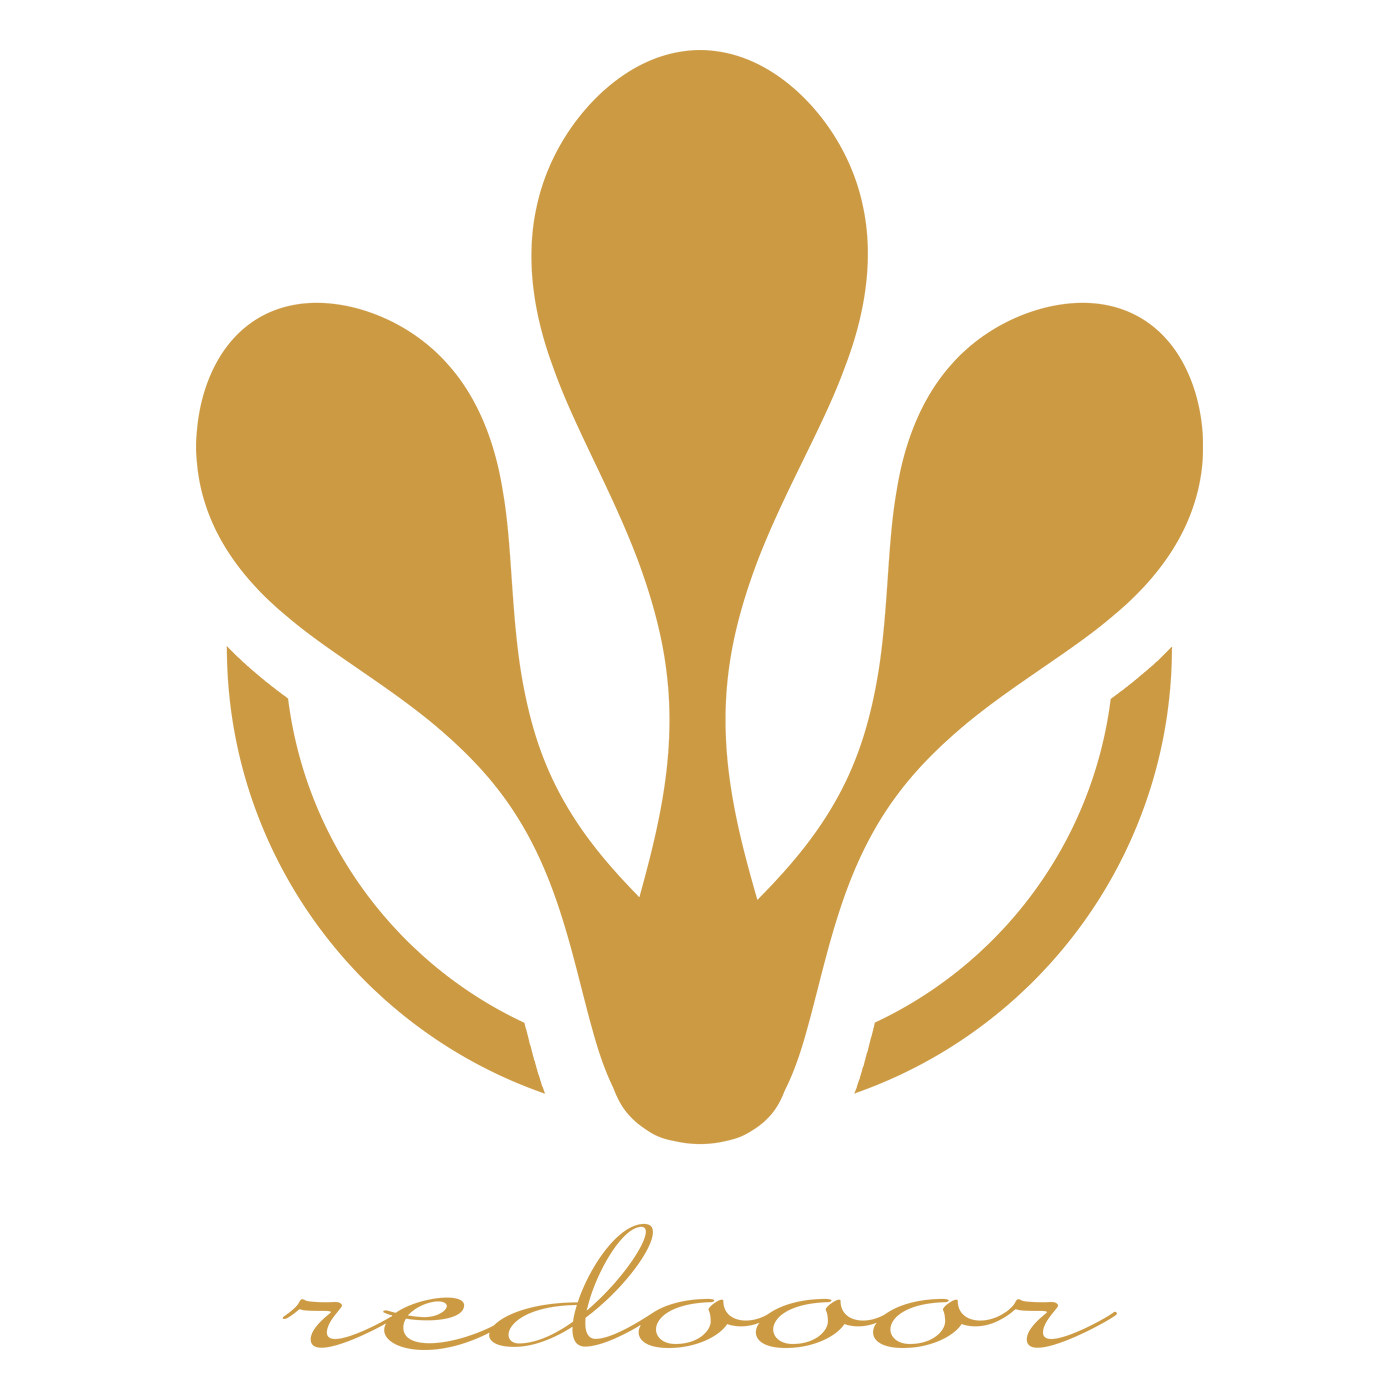 Redooor Web Website Design Development Singapore